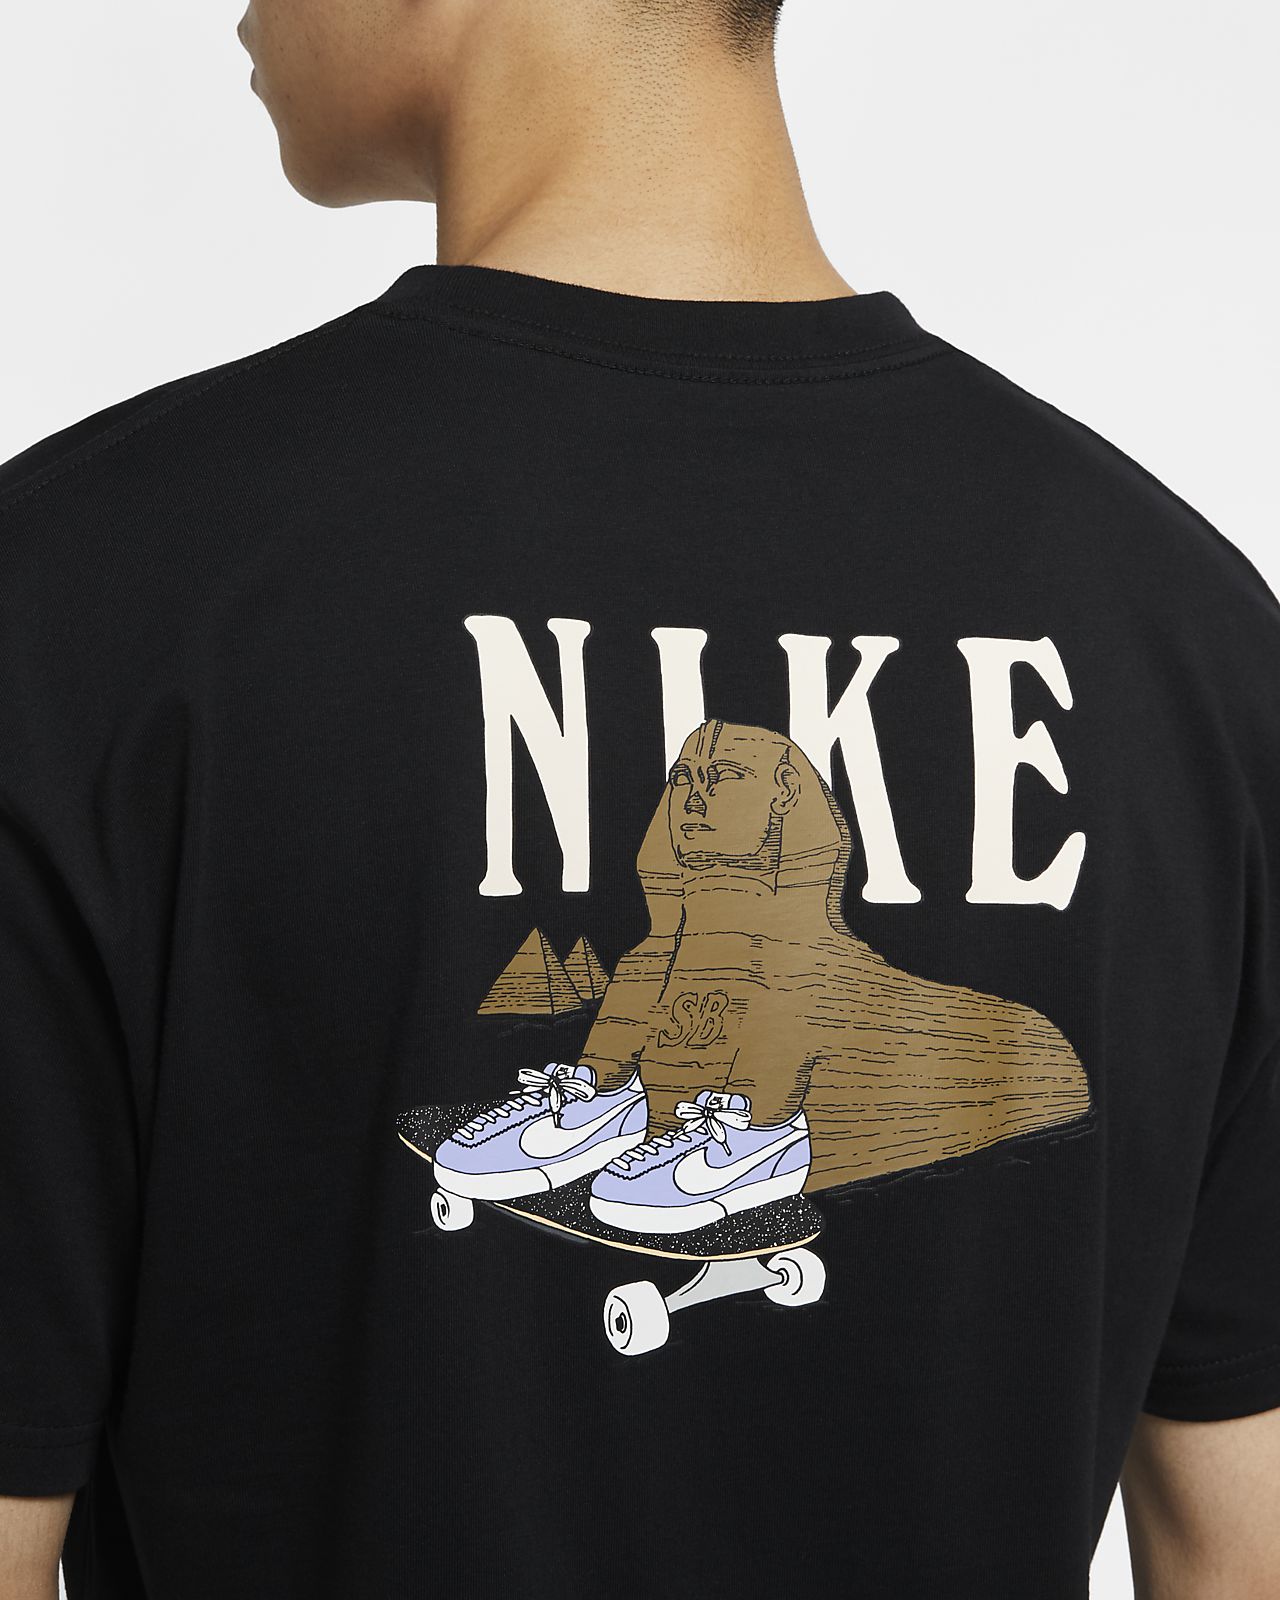 Nike Official Nike Sb Men S Skate T Shirt Online Store Mail Order